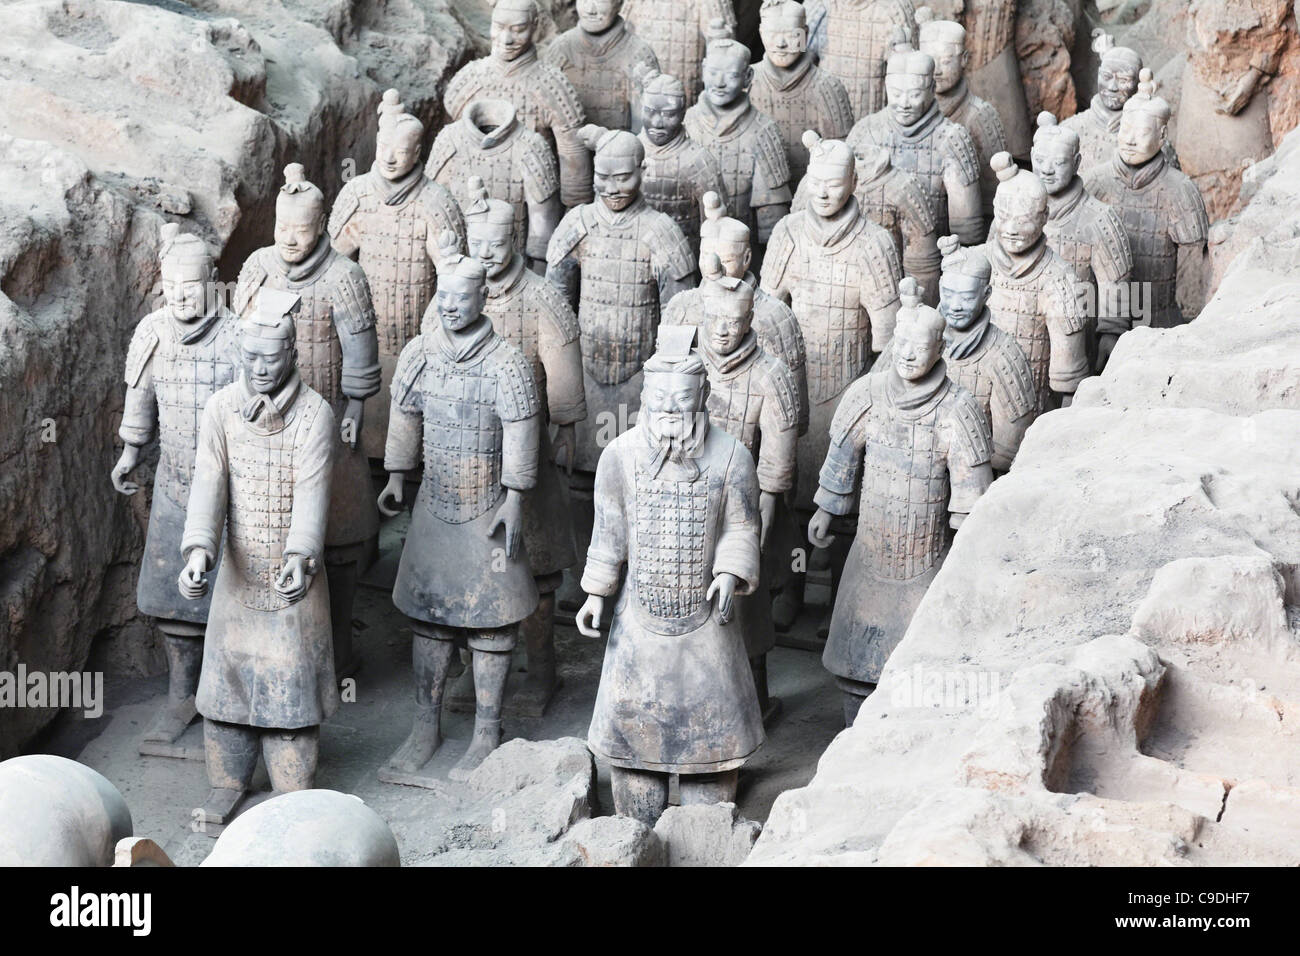 Cina, Xi'an, soldati di terracotta a Qin Shi Huang la tomba di Foto Stock